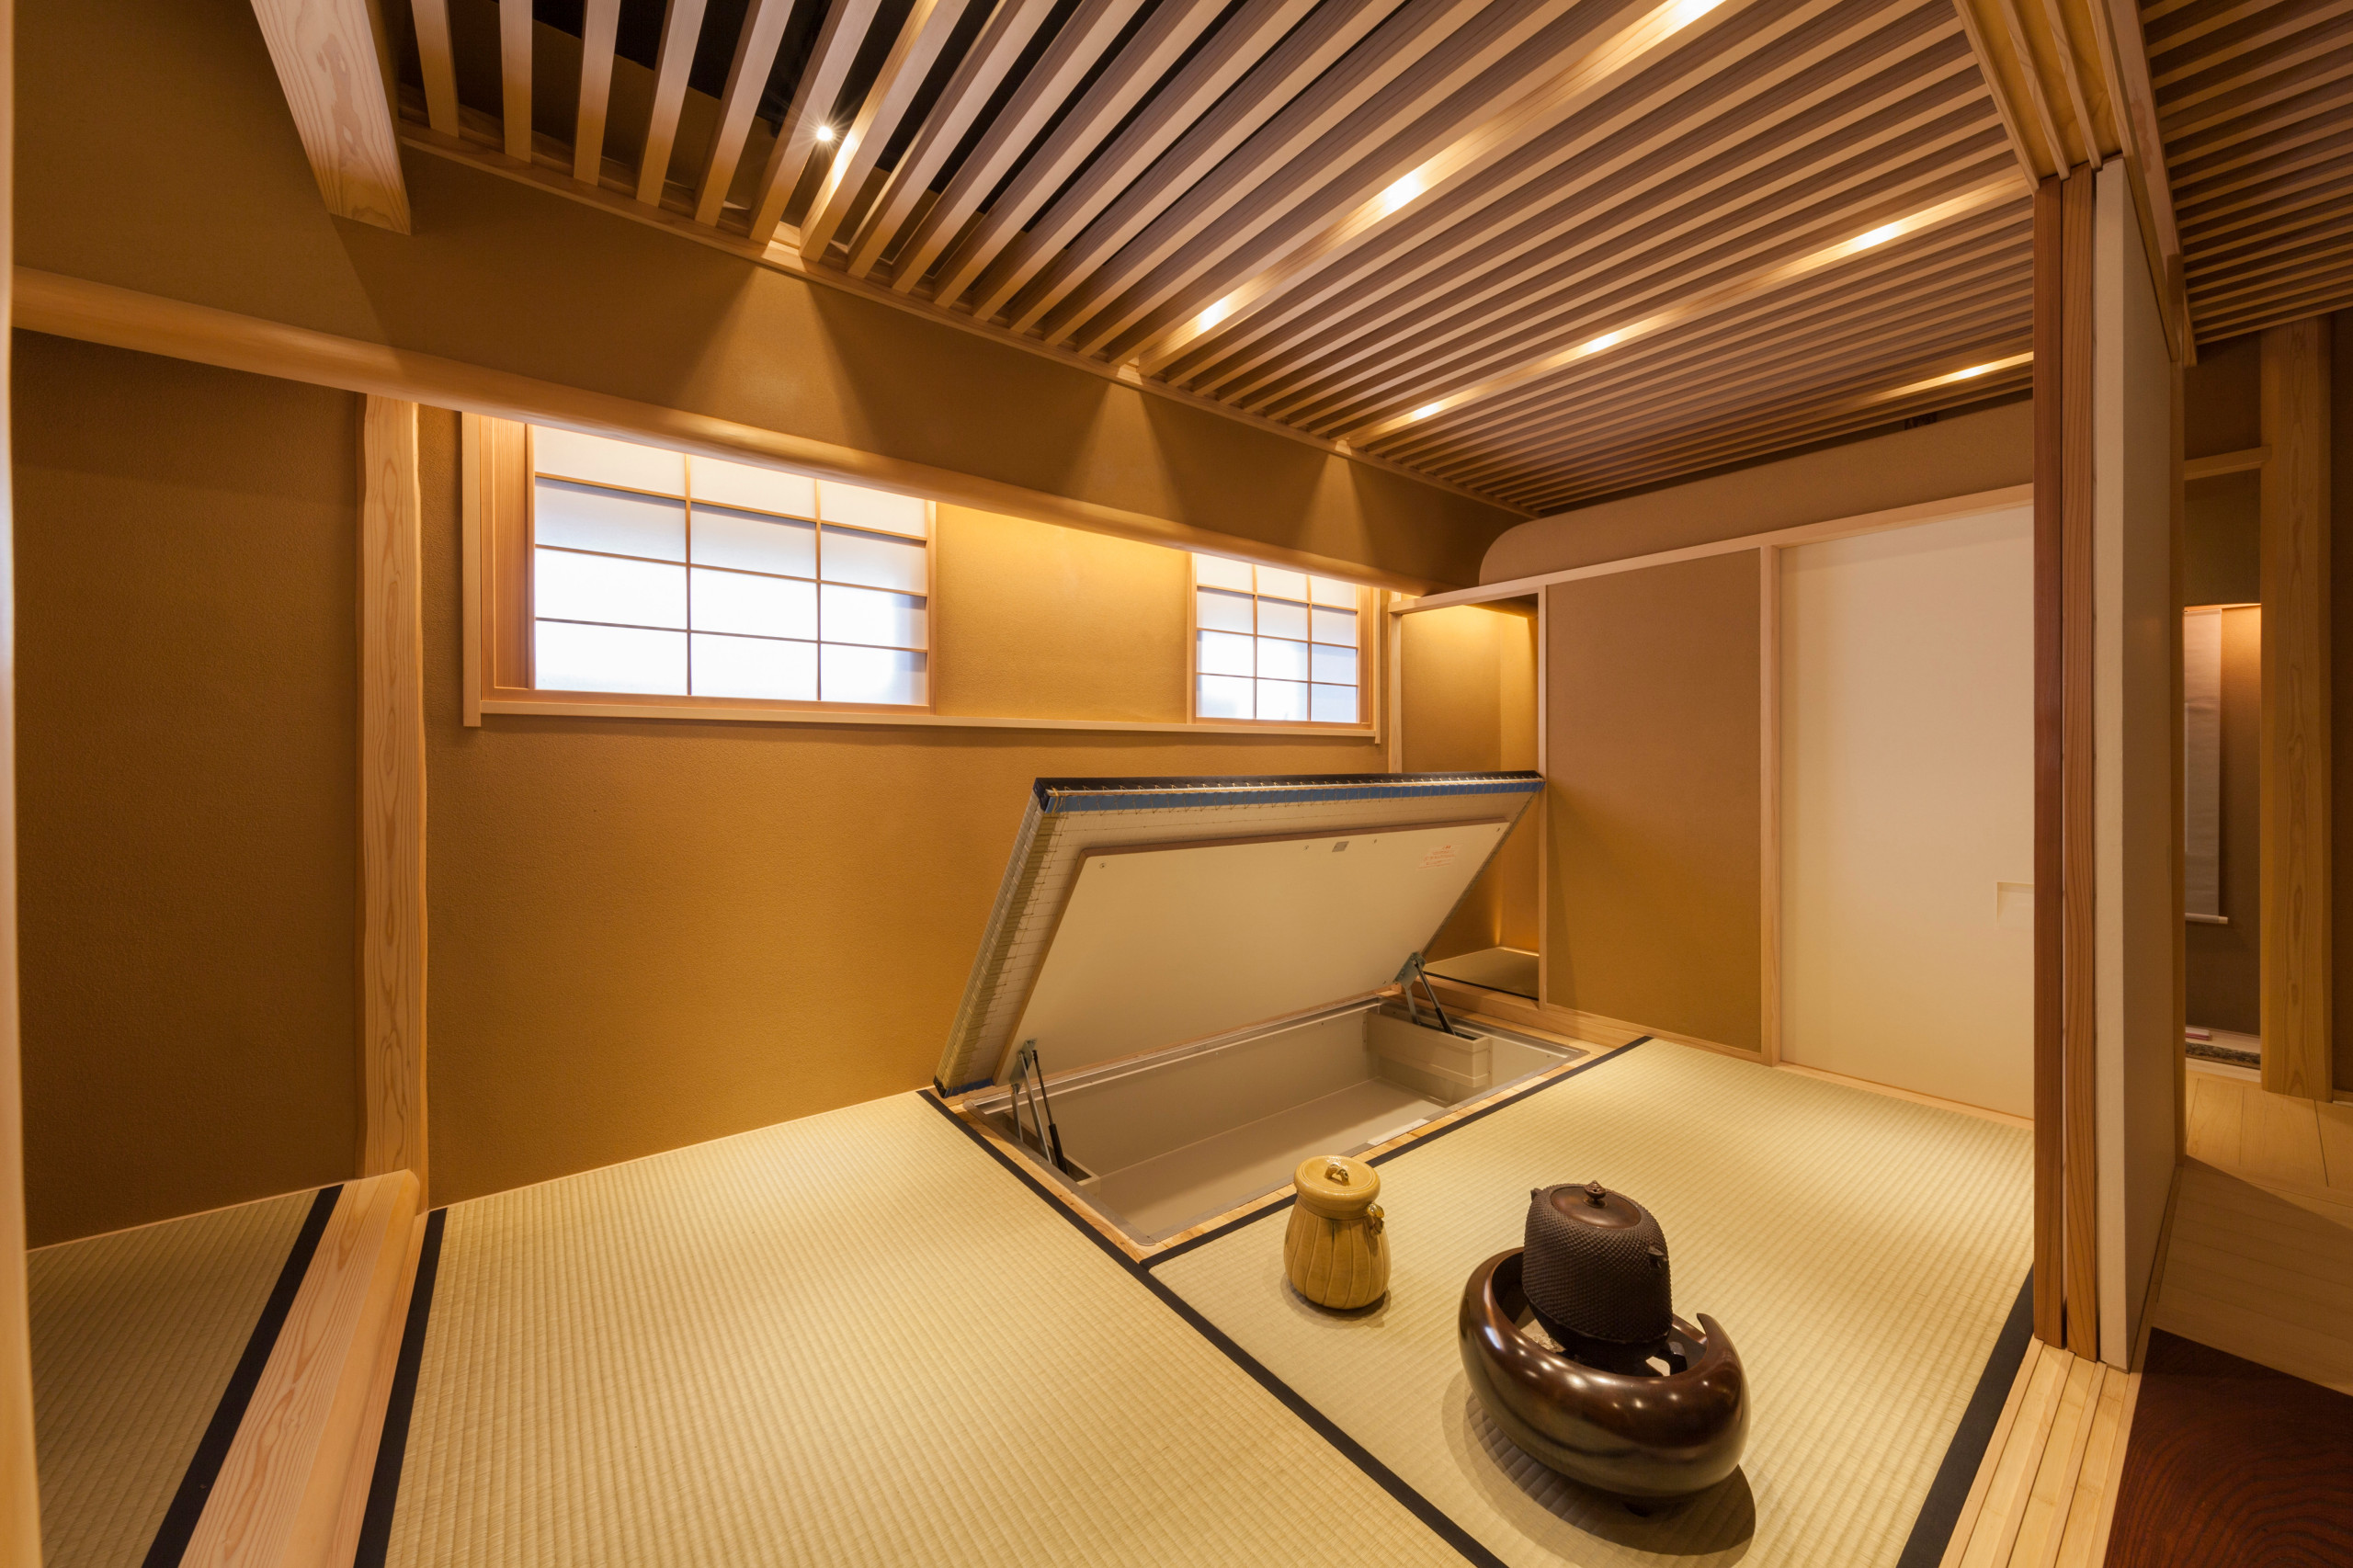 一穂堂茶室 Japanese Family Room Tokyo By 椿建築デザイン研究所tsubaki Associates Houzz